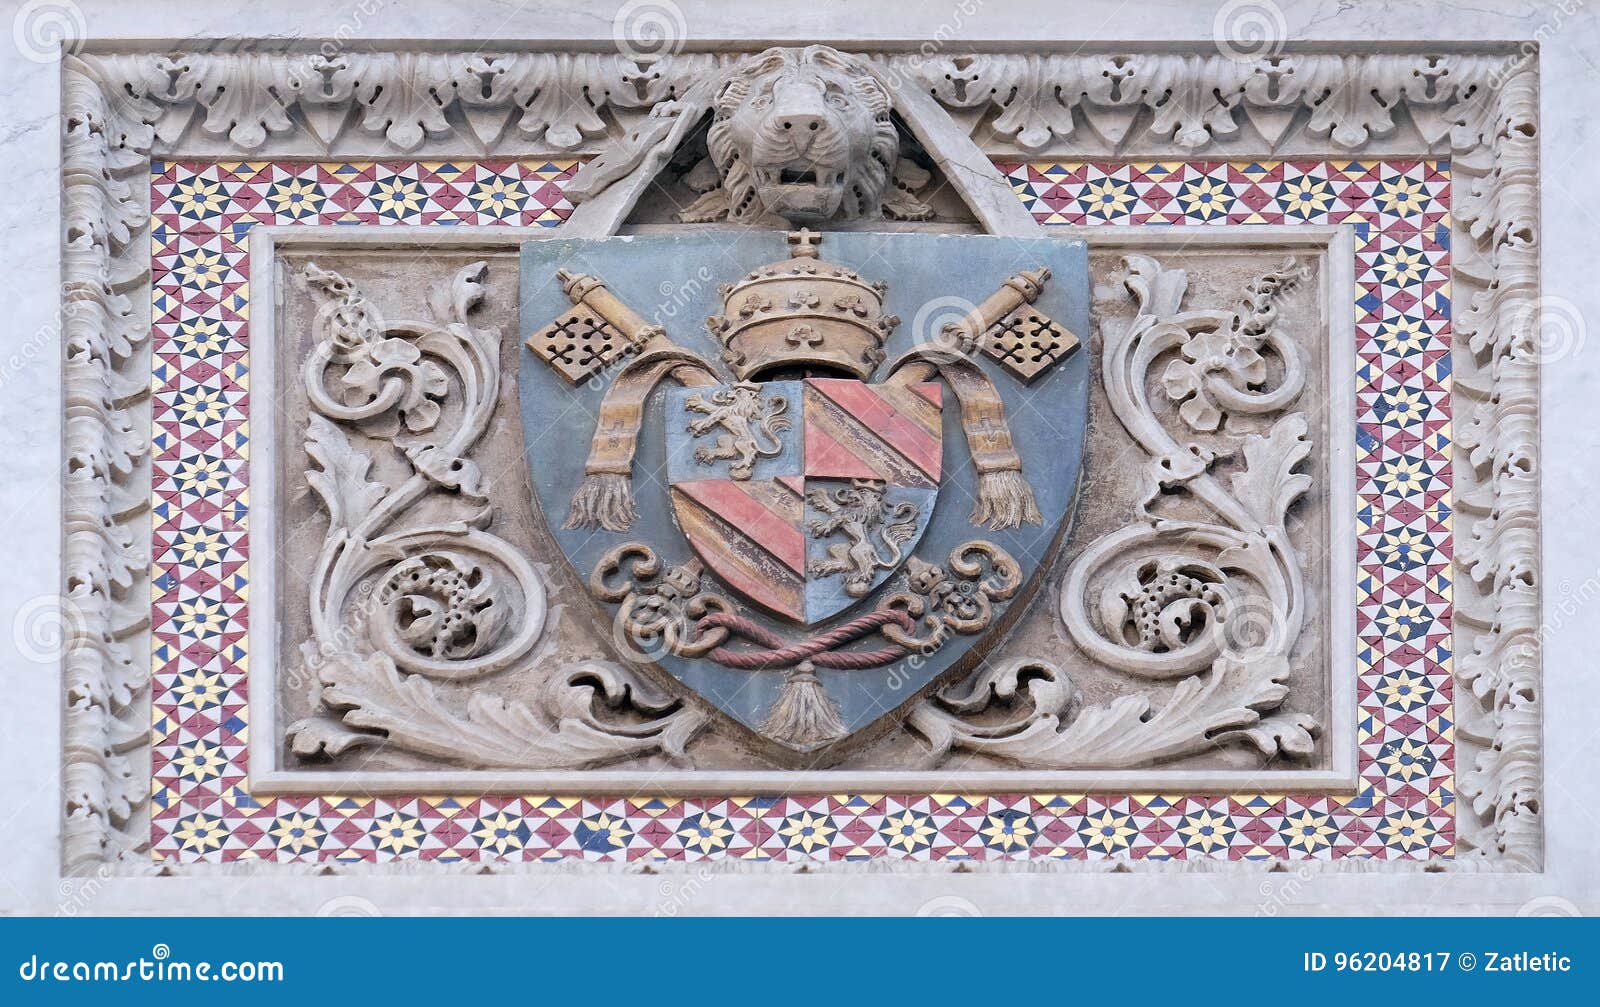 Барельеф с изображением гербов королевских дворов Европы,рояль